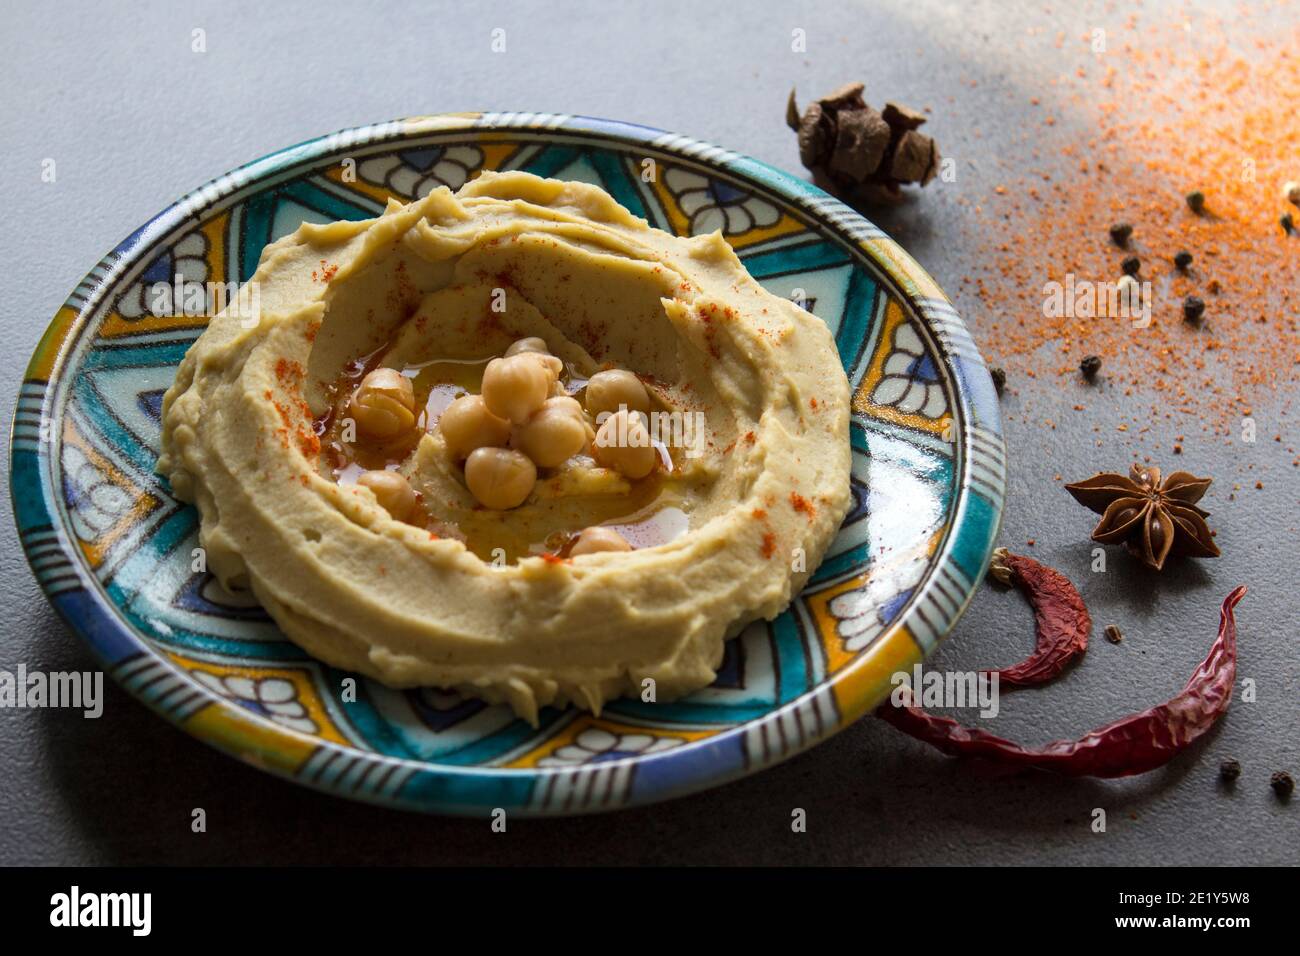 Primo piano foto di un hummus fresco fatto in casa su una colorata piastra in ceramica. Foto pasto bilanciato. Concetto di alimentazione sana. Cibo autentico del Medio Oriente. Foto Stock